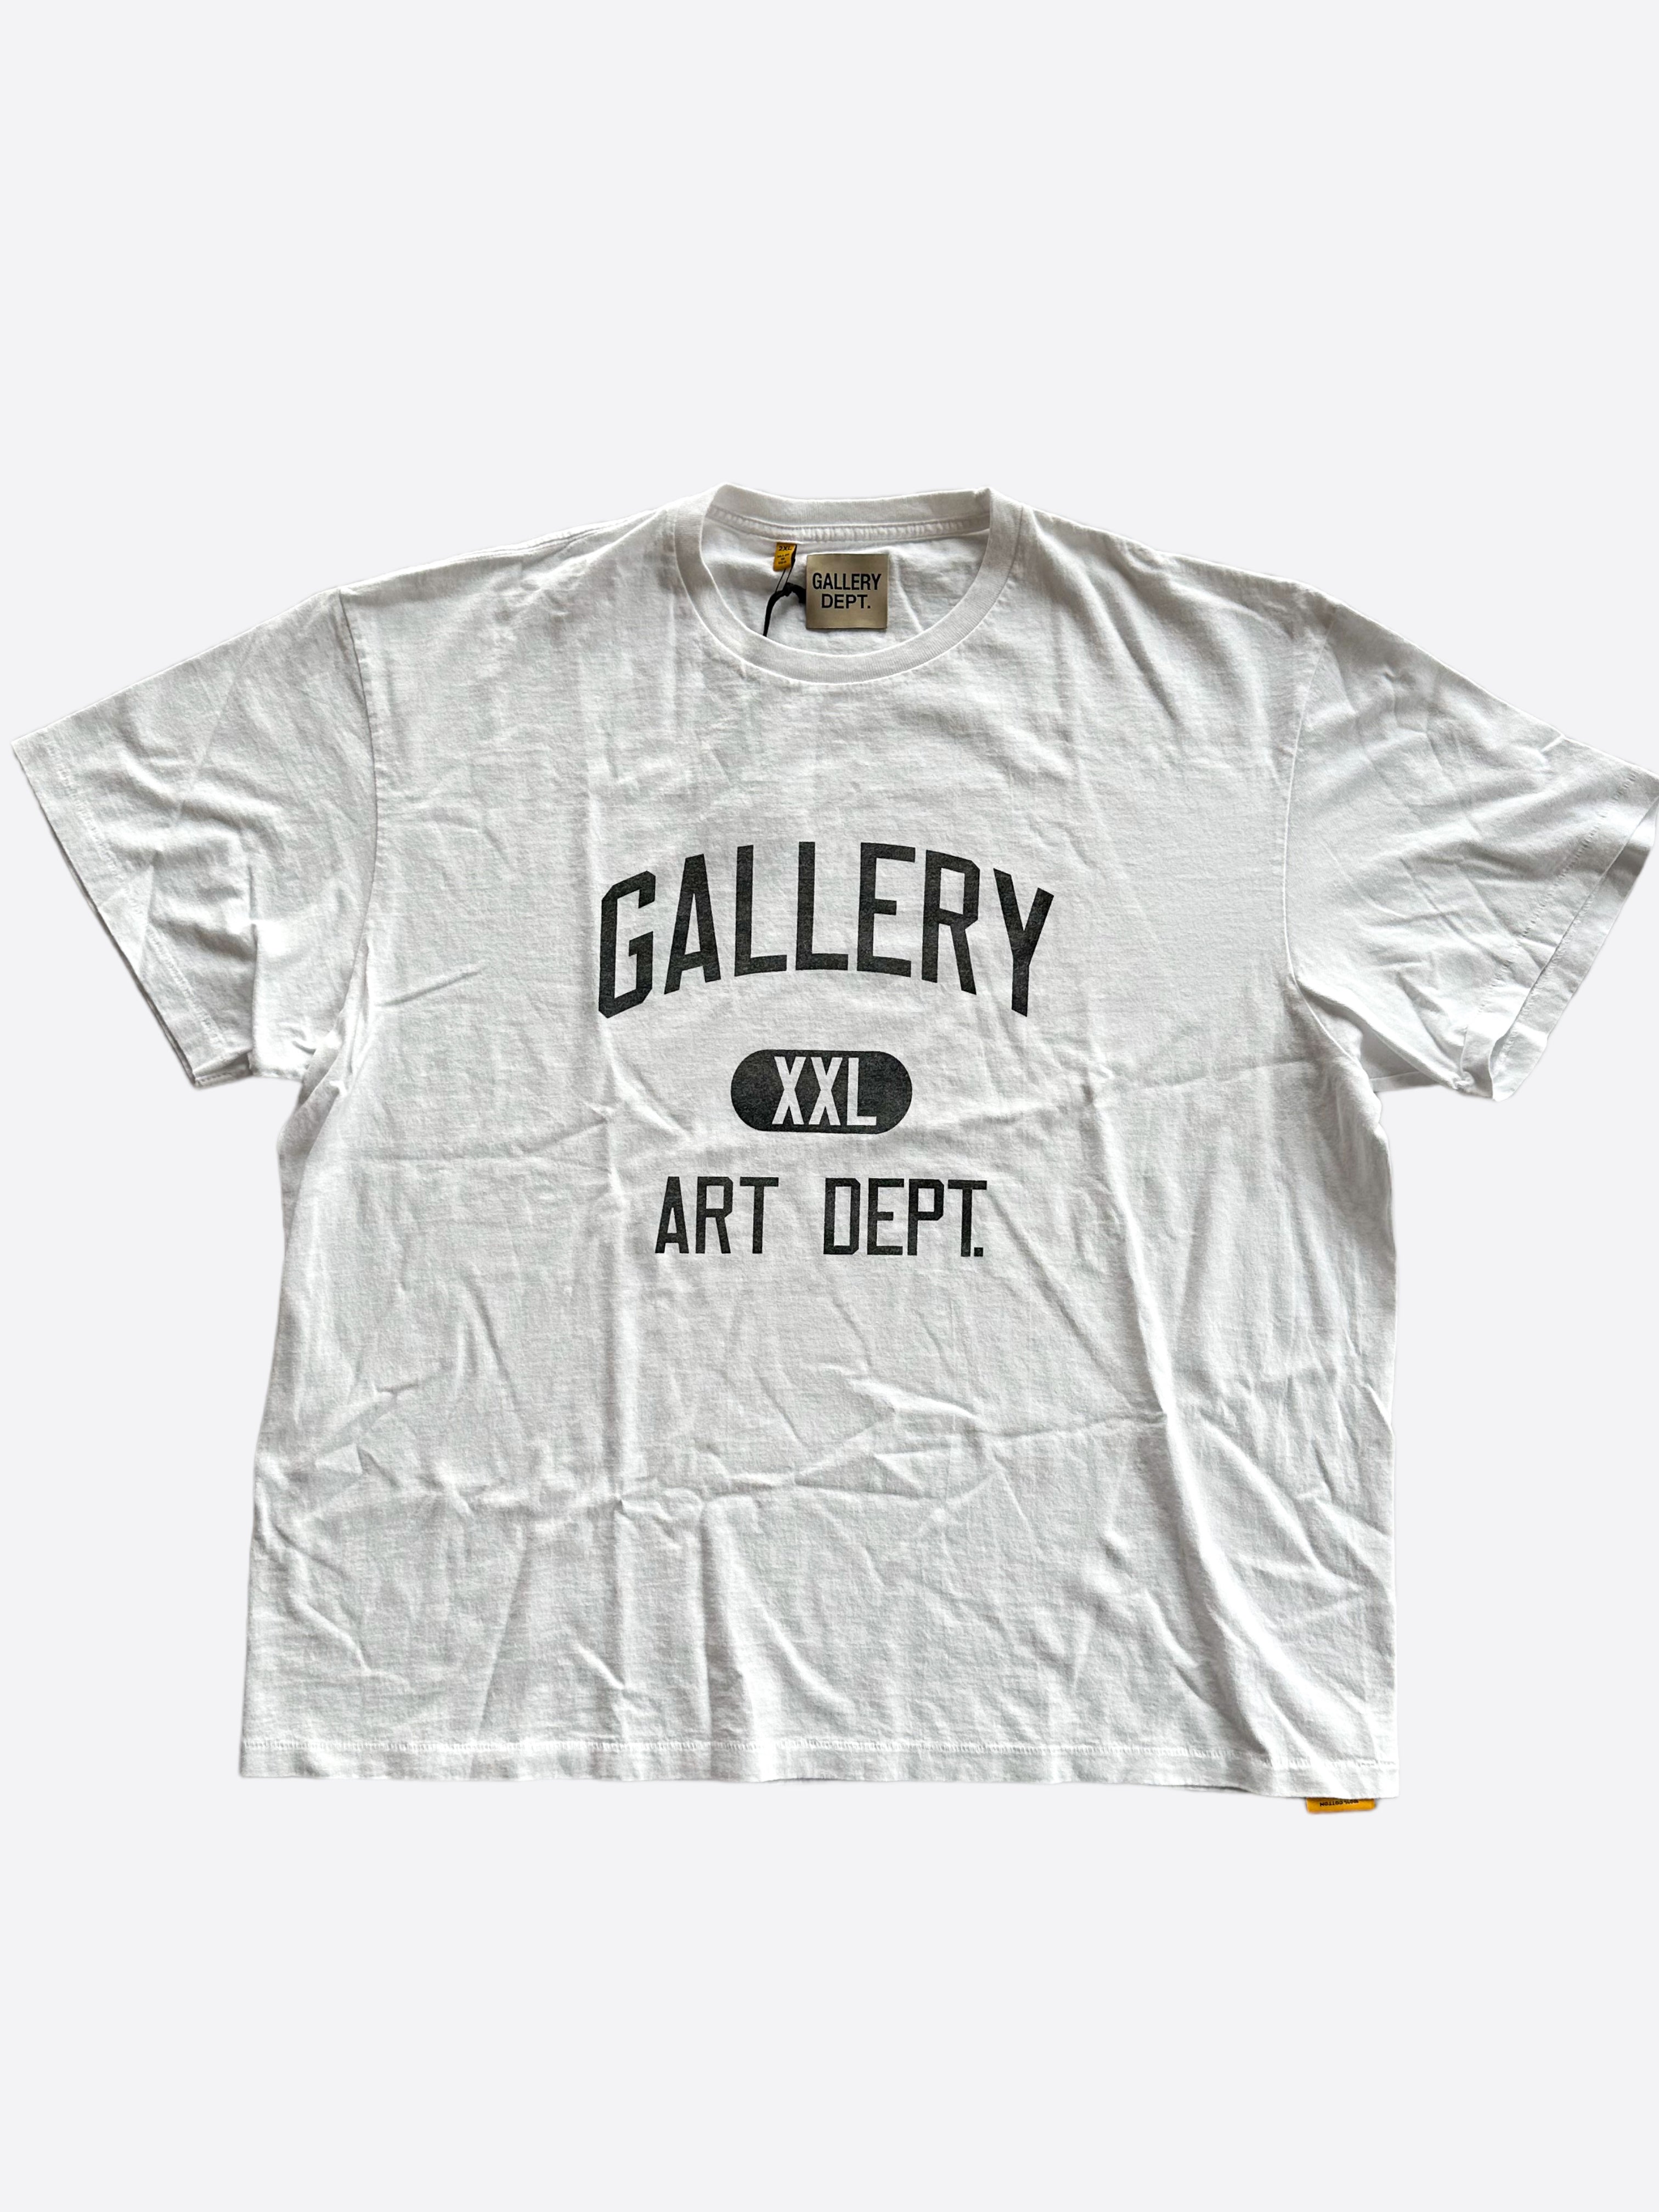 Gallery Dept White & Black Art Dept T-Shirt